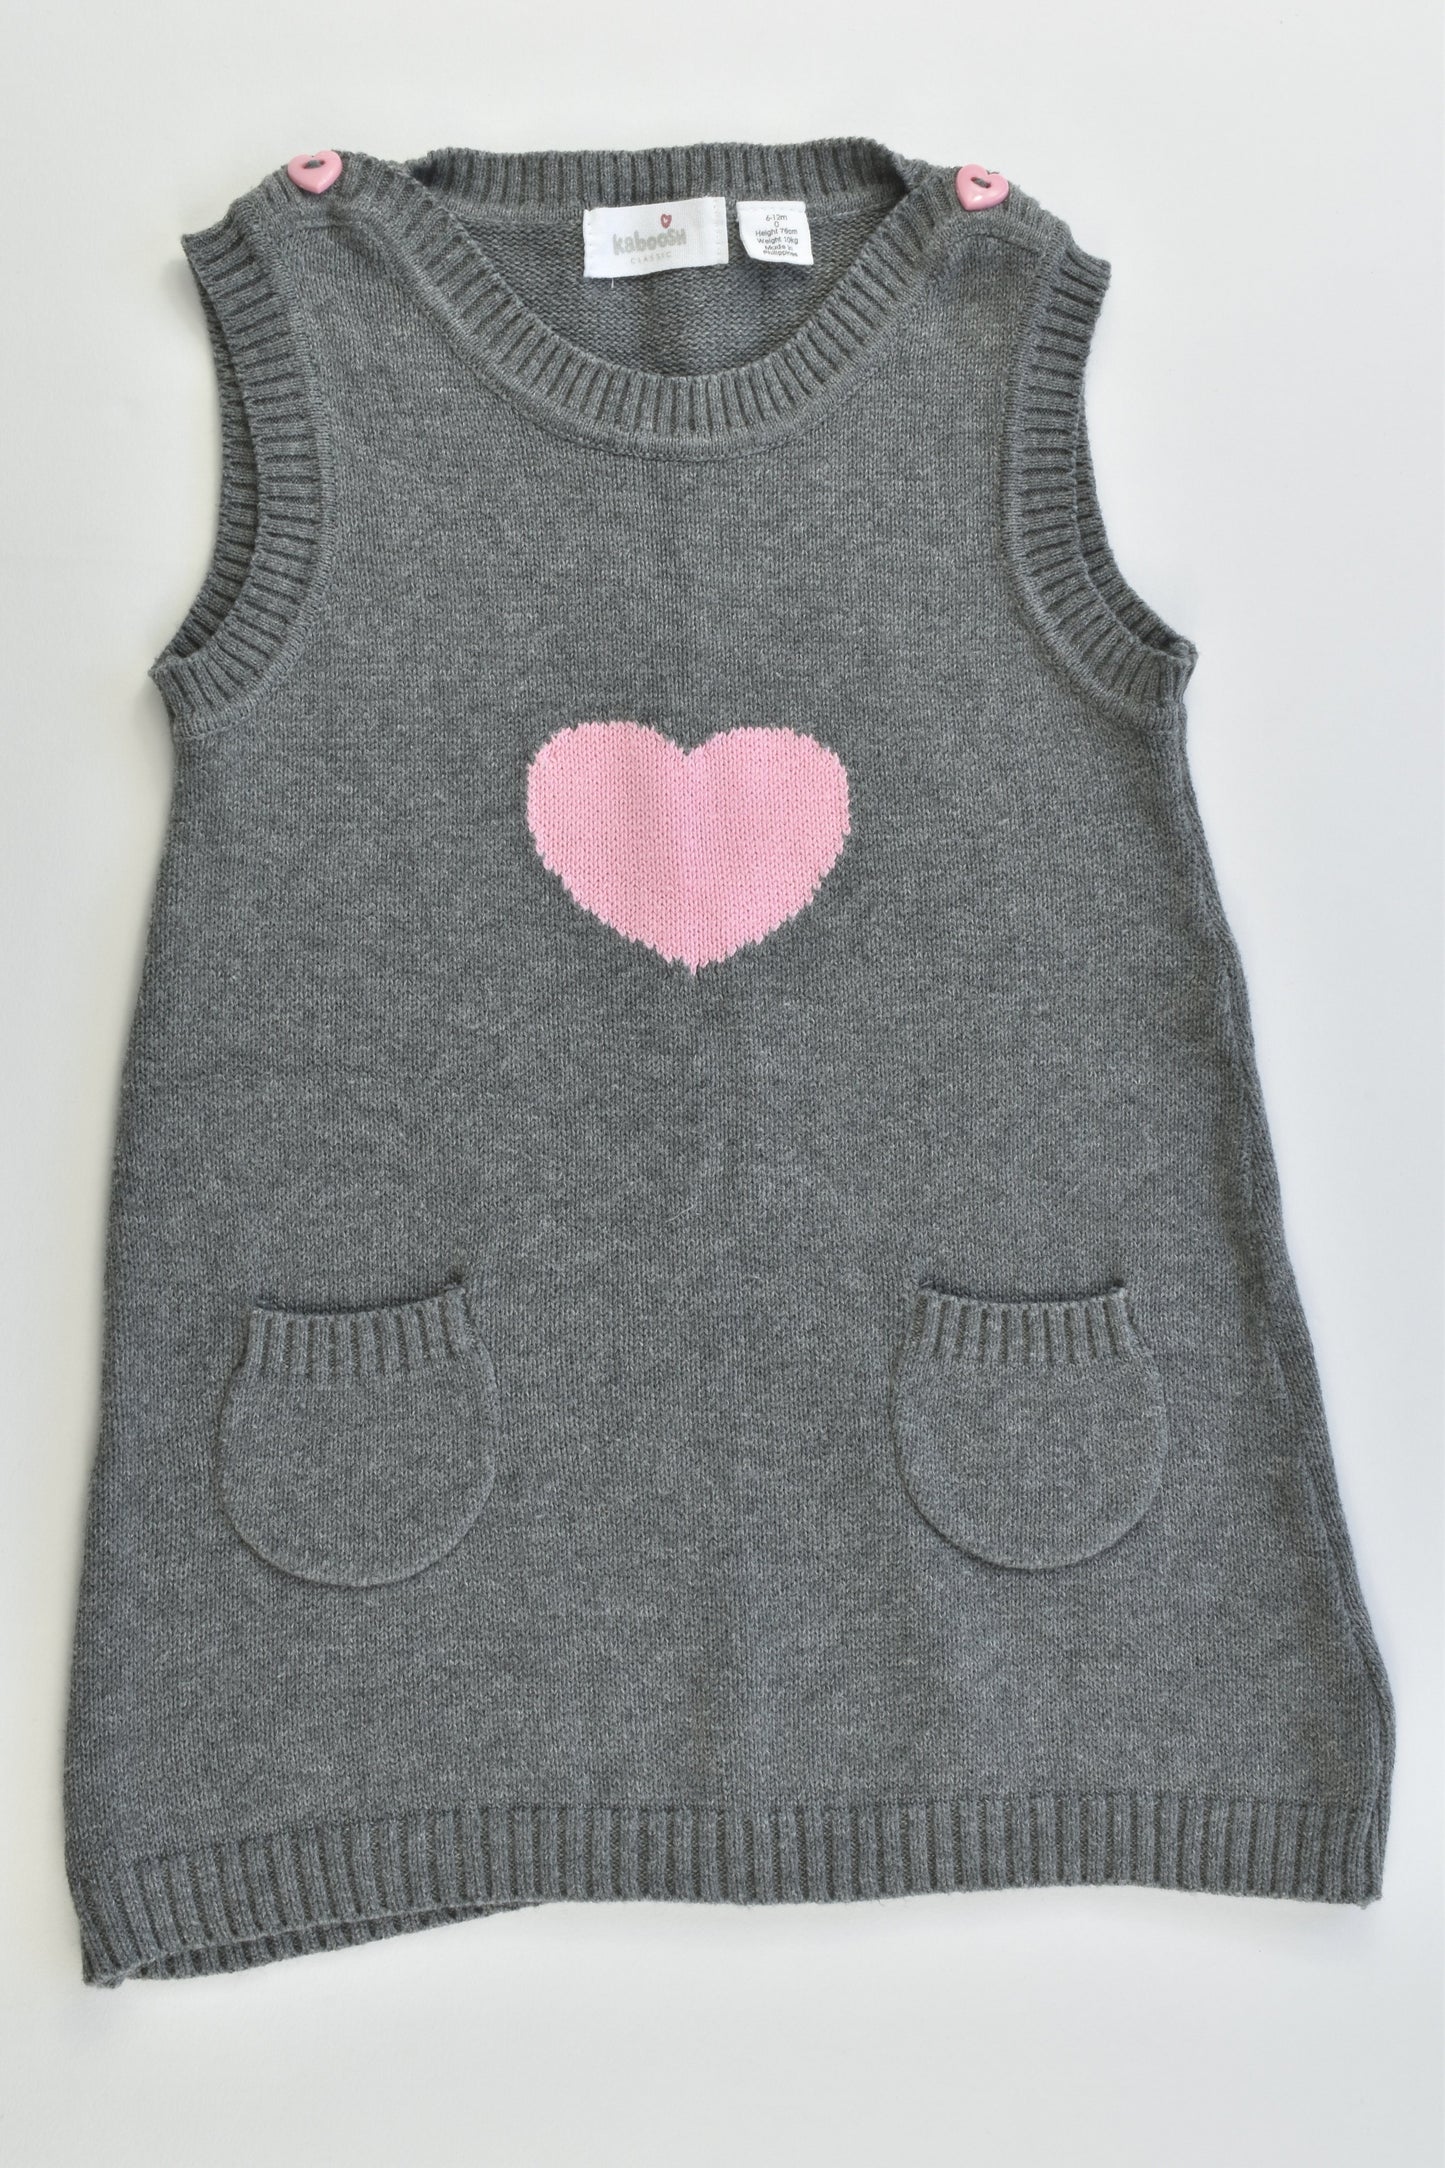 Kaboosh Size 0 (76 cm, 6-12 months) Knitted Love Heart Dress